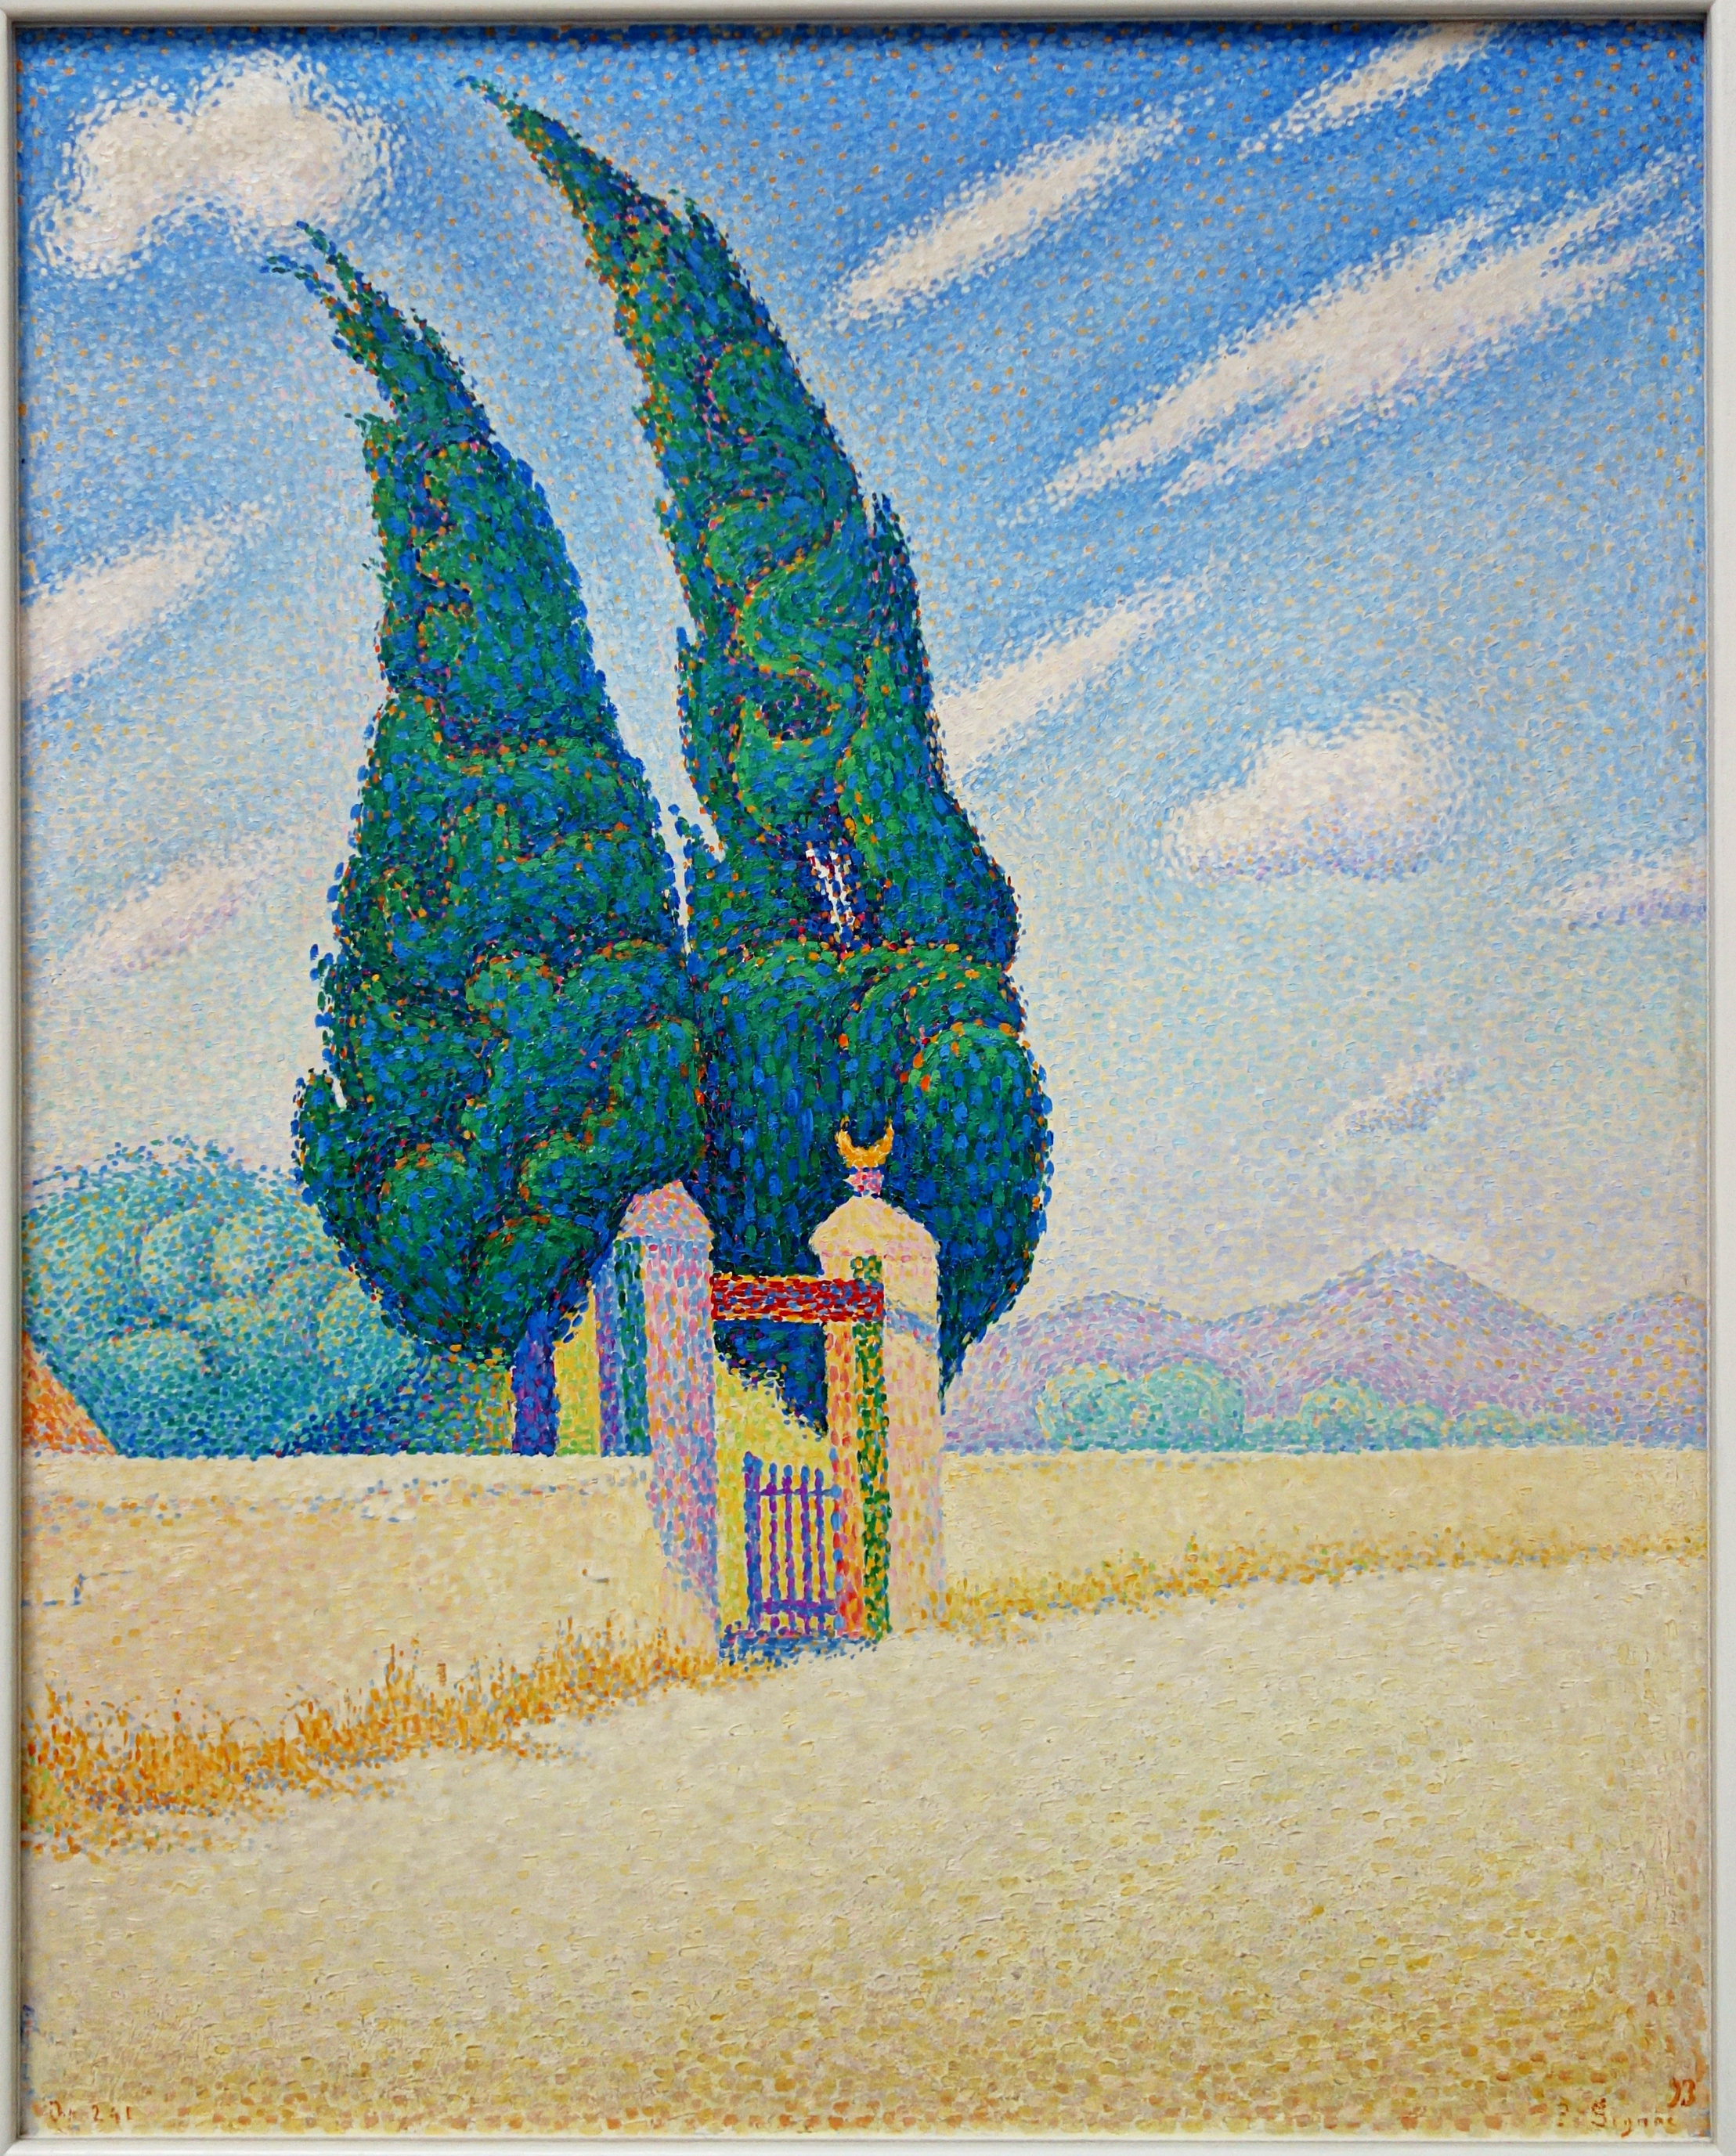 两棵柏树 by 保罗 西尼亚克 - 1893 - 81,5 x 65,5 cm 库勒-穆勒博物馆